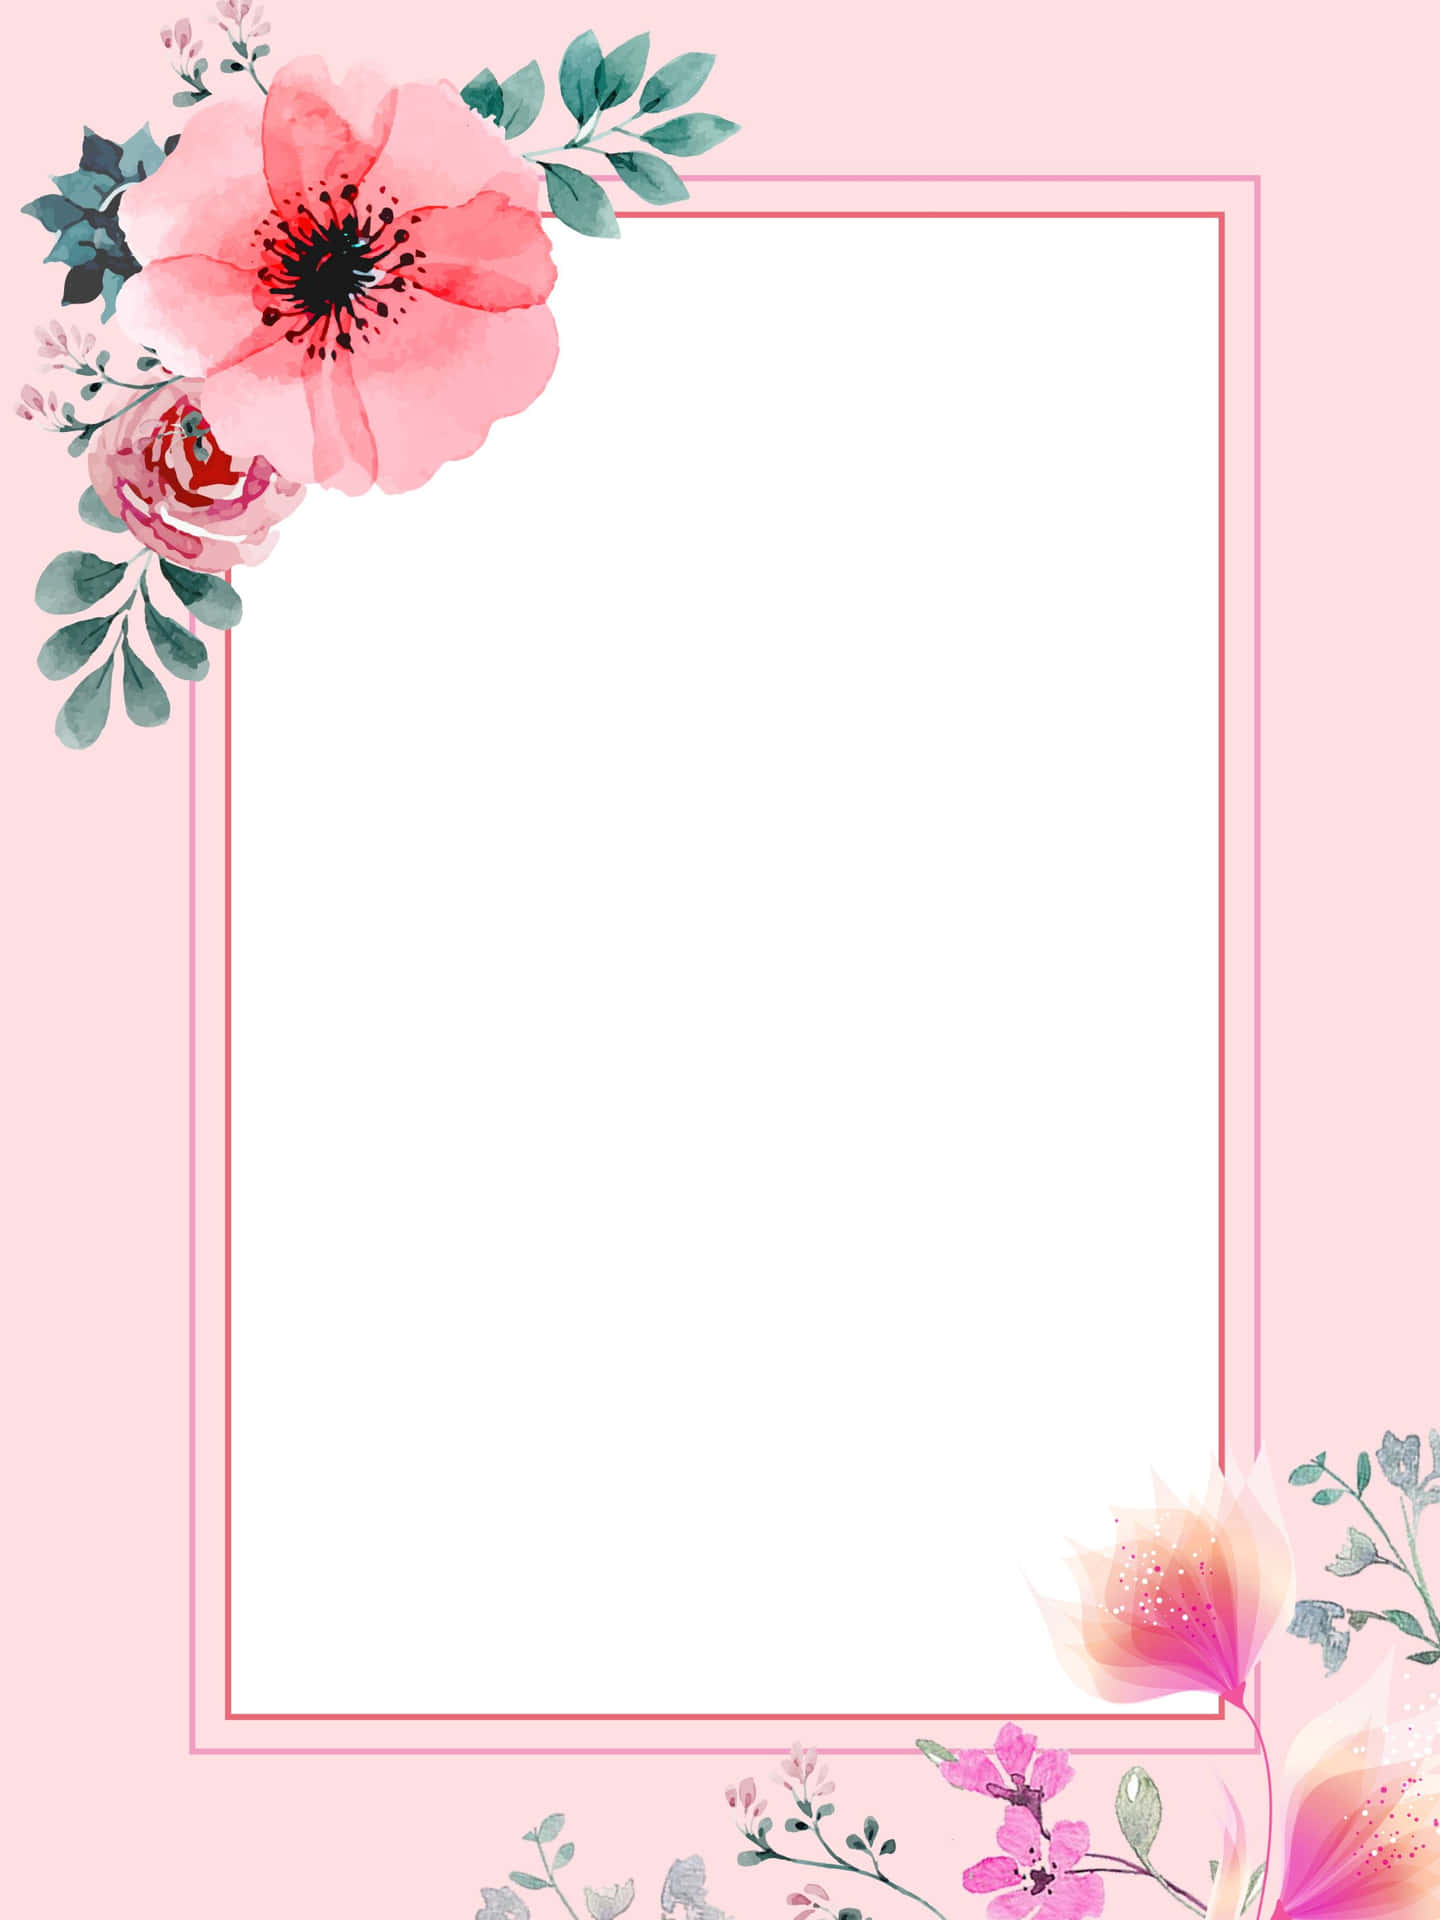 Etfelt Af Smukke Pink Blomster Oplyst Af Sollyset.